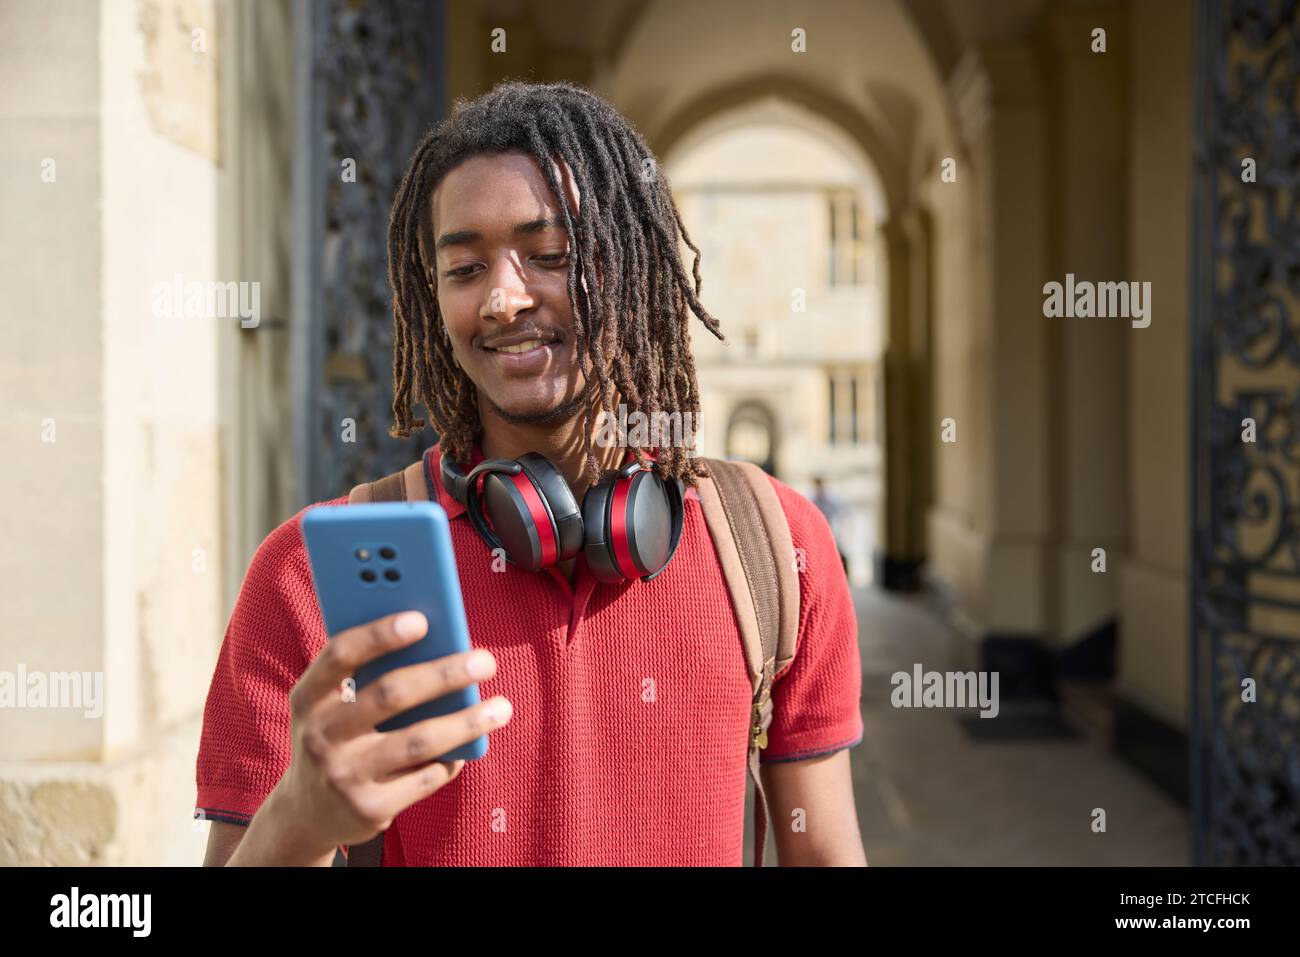 Gli studenti di sesso maschile indossano cuffie wireless per controllare i messaggi o i social media su un telefono cellulare all'esterno dell'edificio universitario di Oxford, Regno Unito Foto Stock